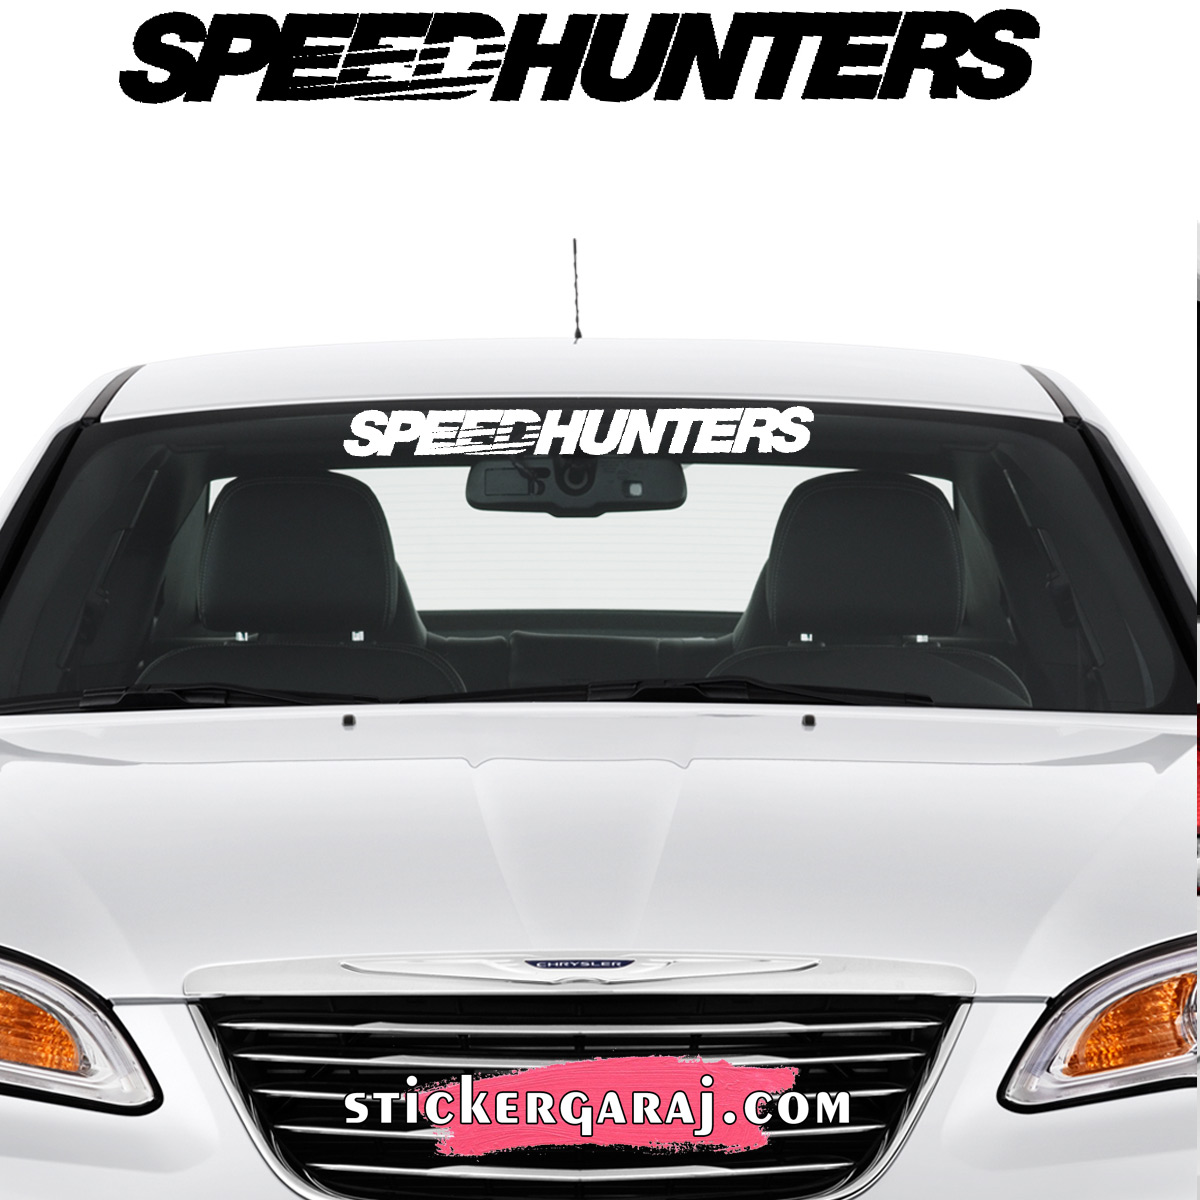 Chevrolet oto sticker 1 - Chevrolet cam sticker - speedhunters